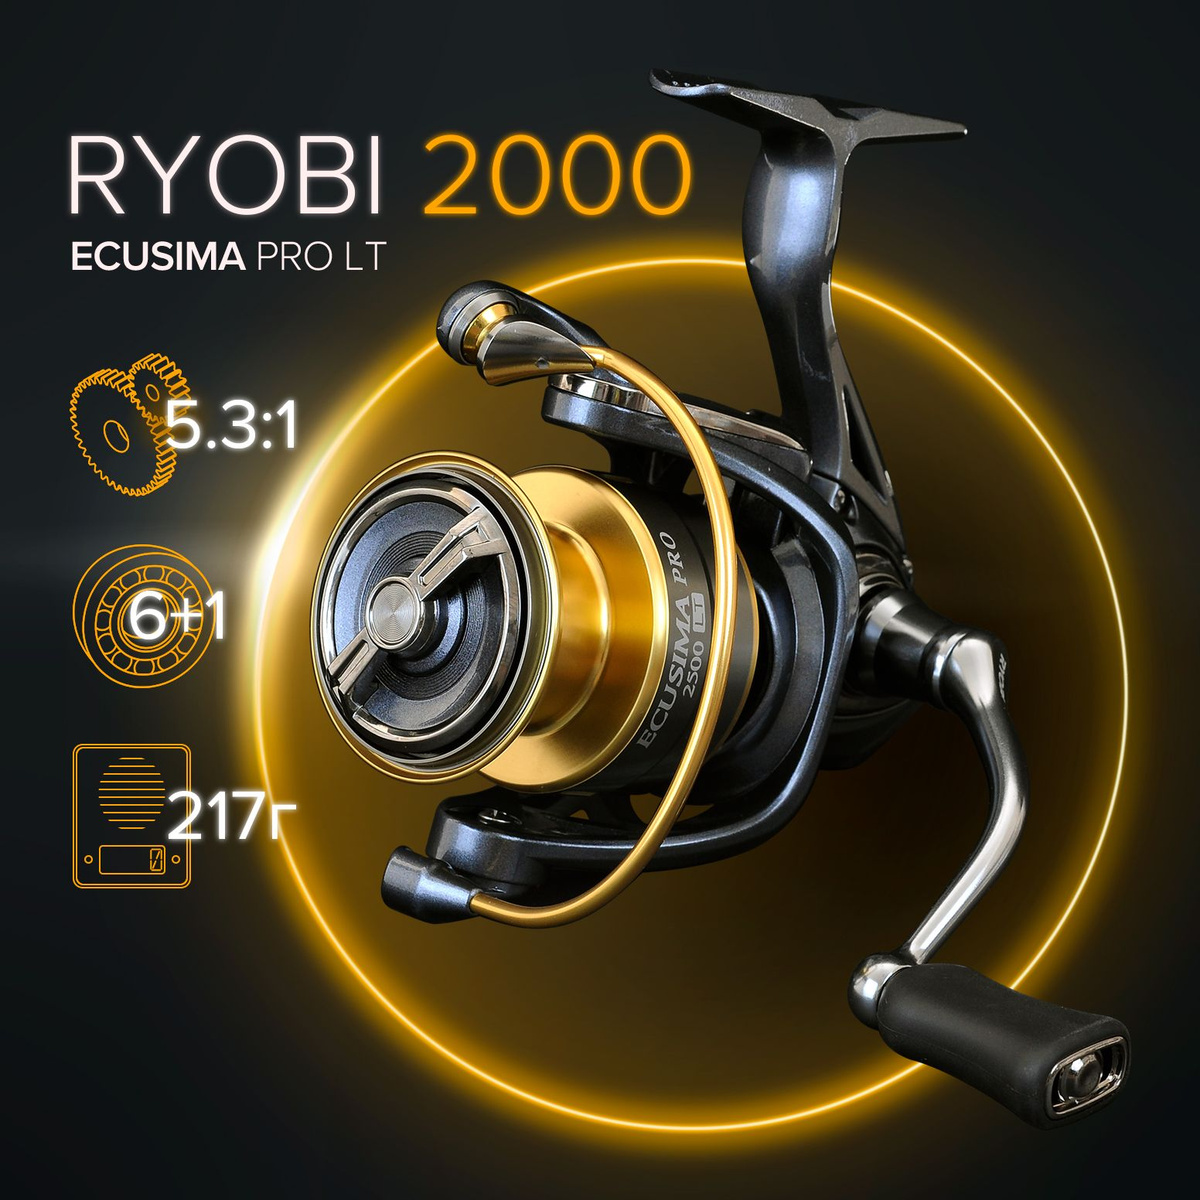 Ryobi Ecusima PRO 2000 LT